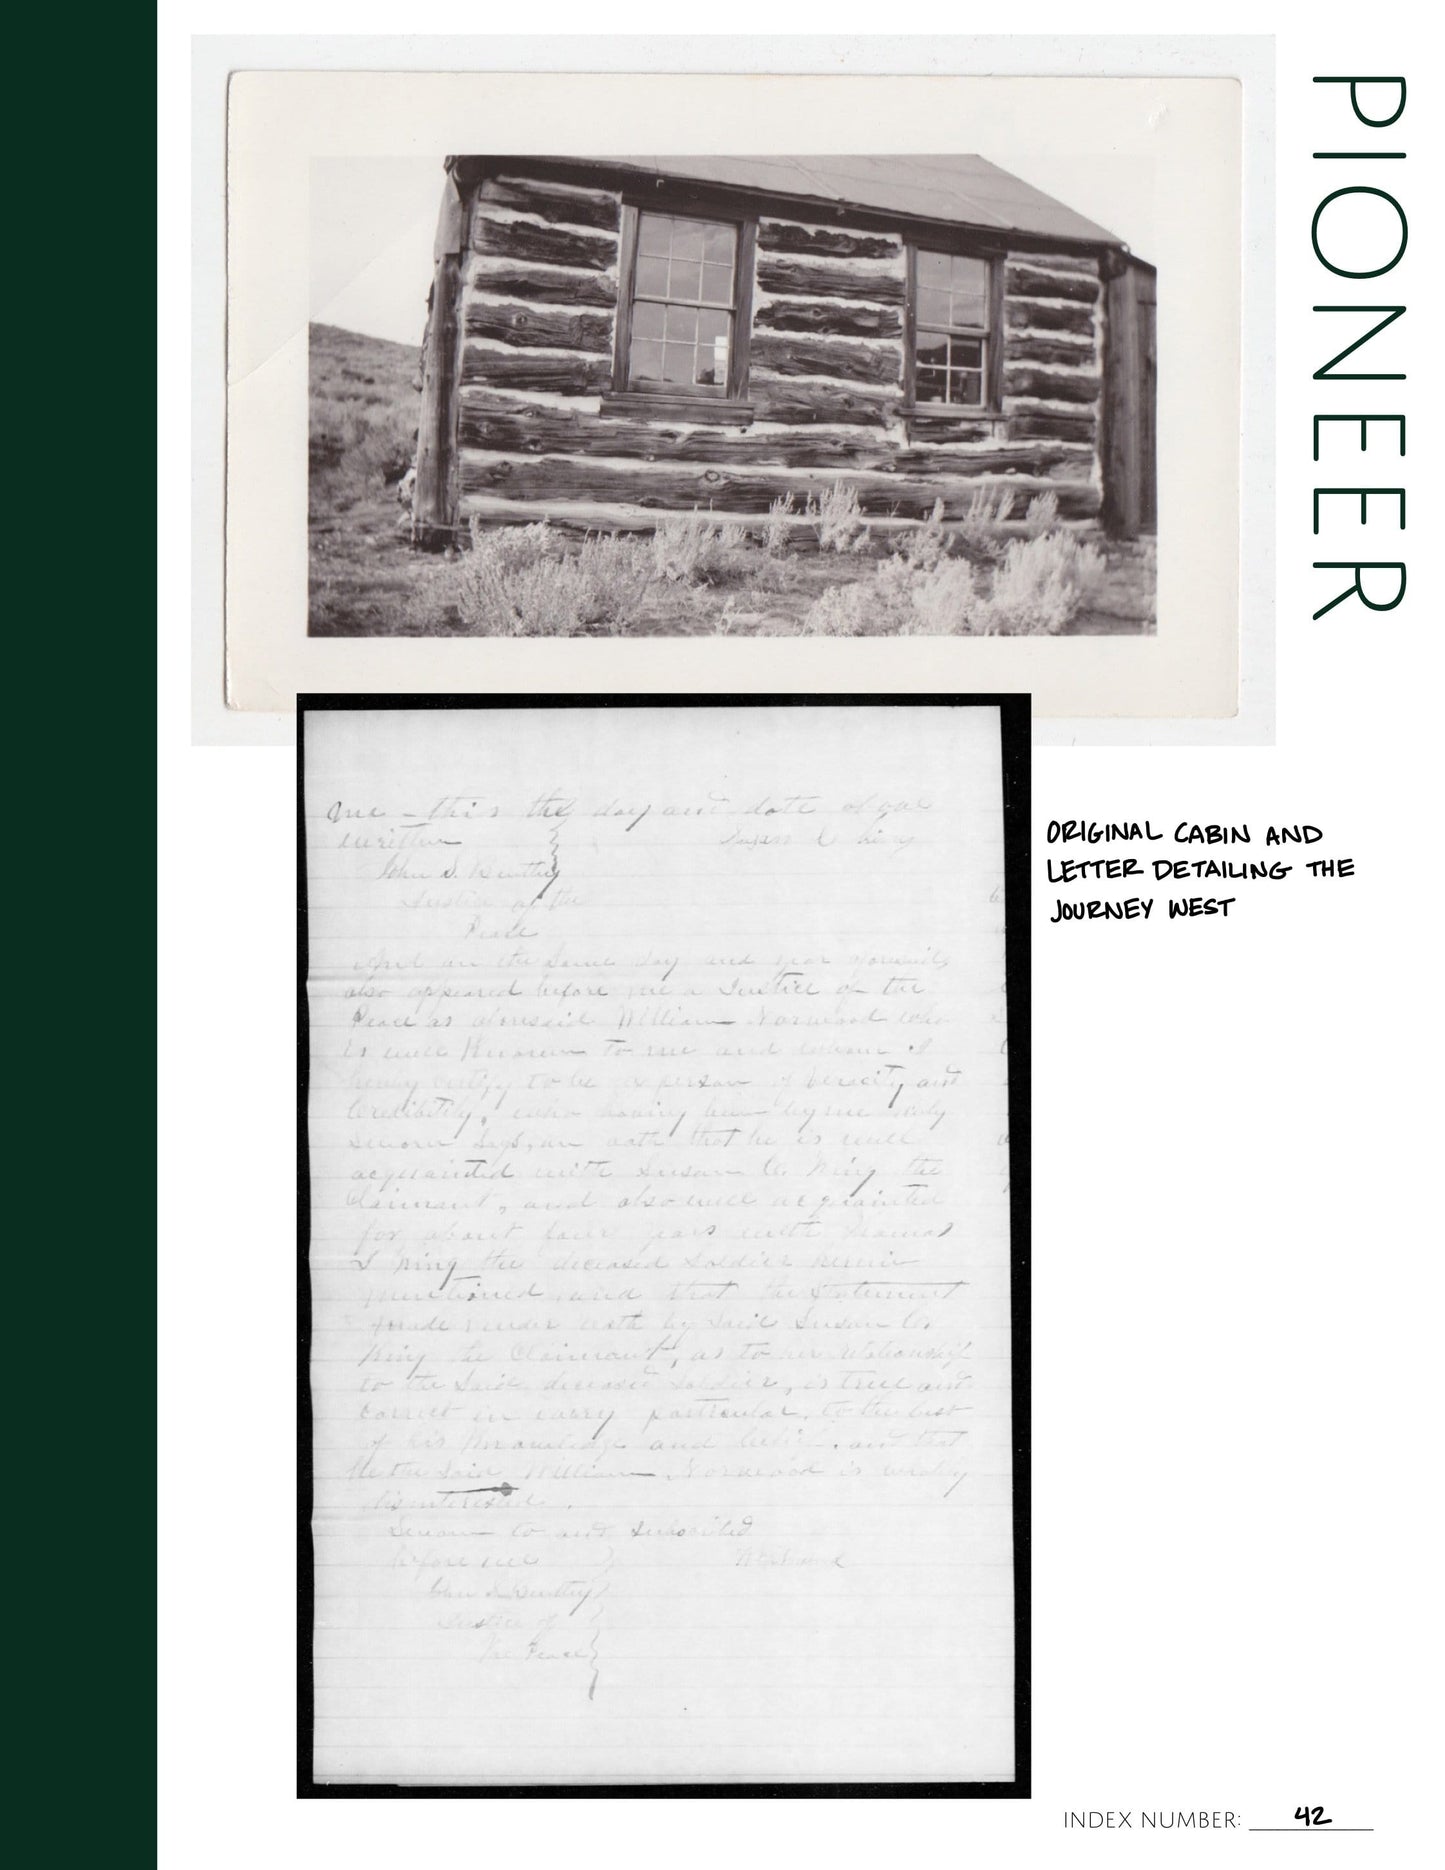 Pioneer: Printable Genealogy Form (Digital Download)